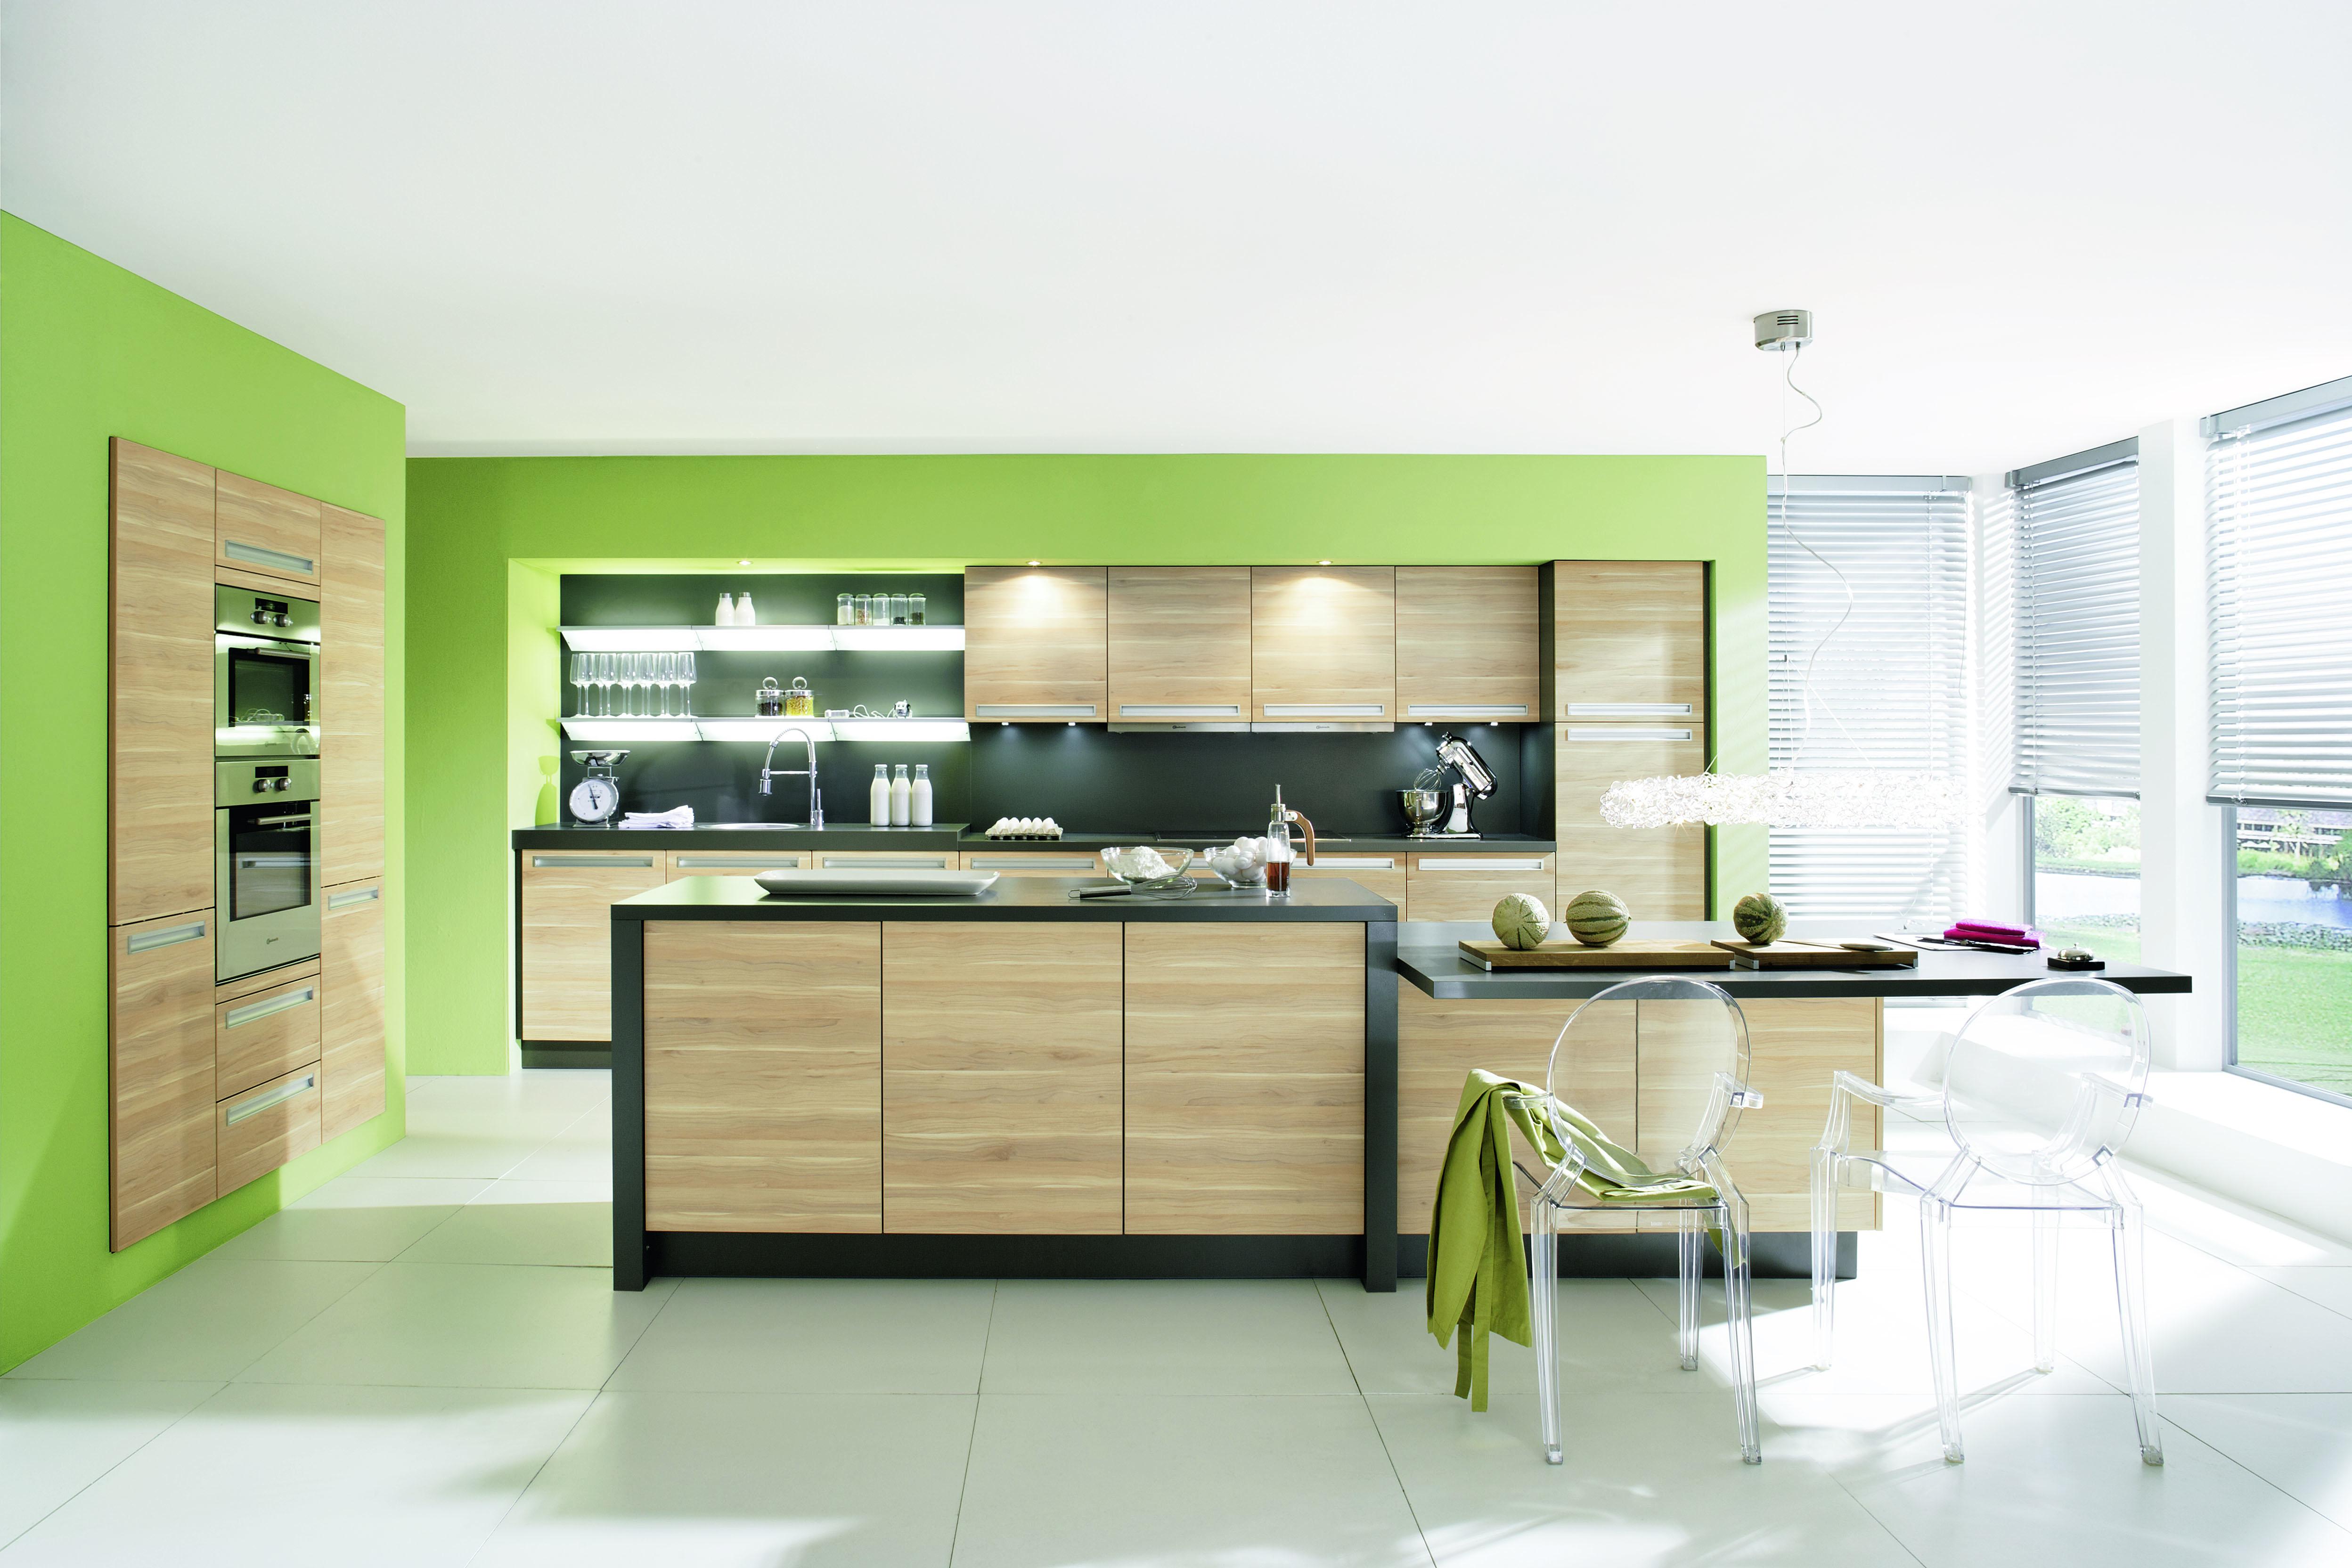 Grüne Wandfarbe für die Küche #transparenterstuhl #grünewandfarbe ©Alno